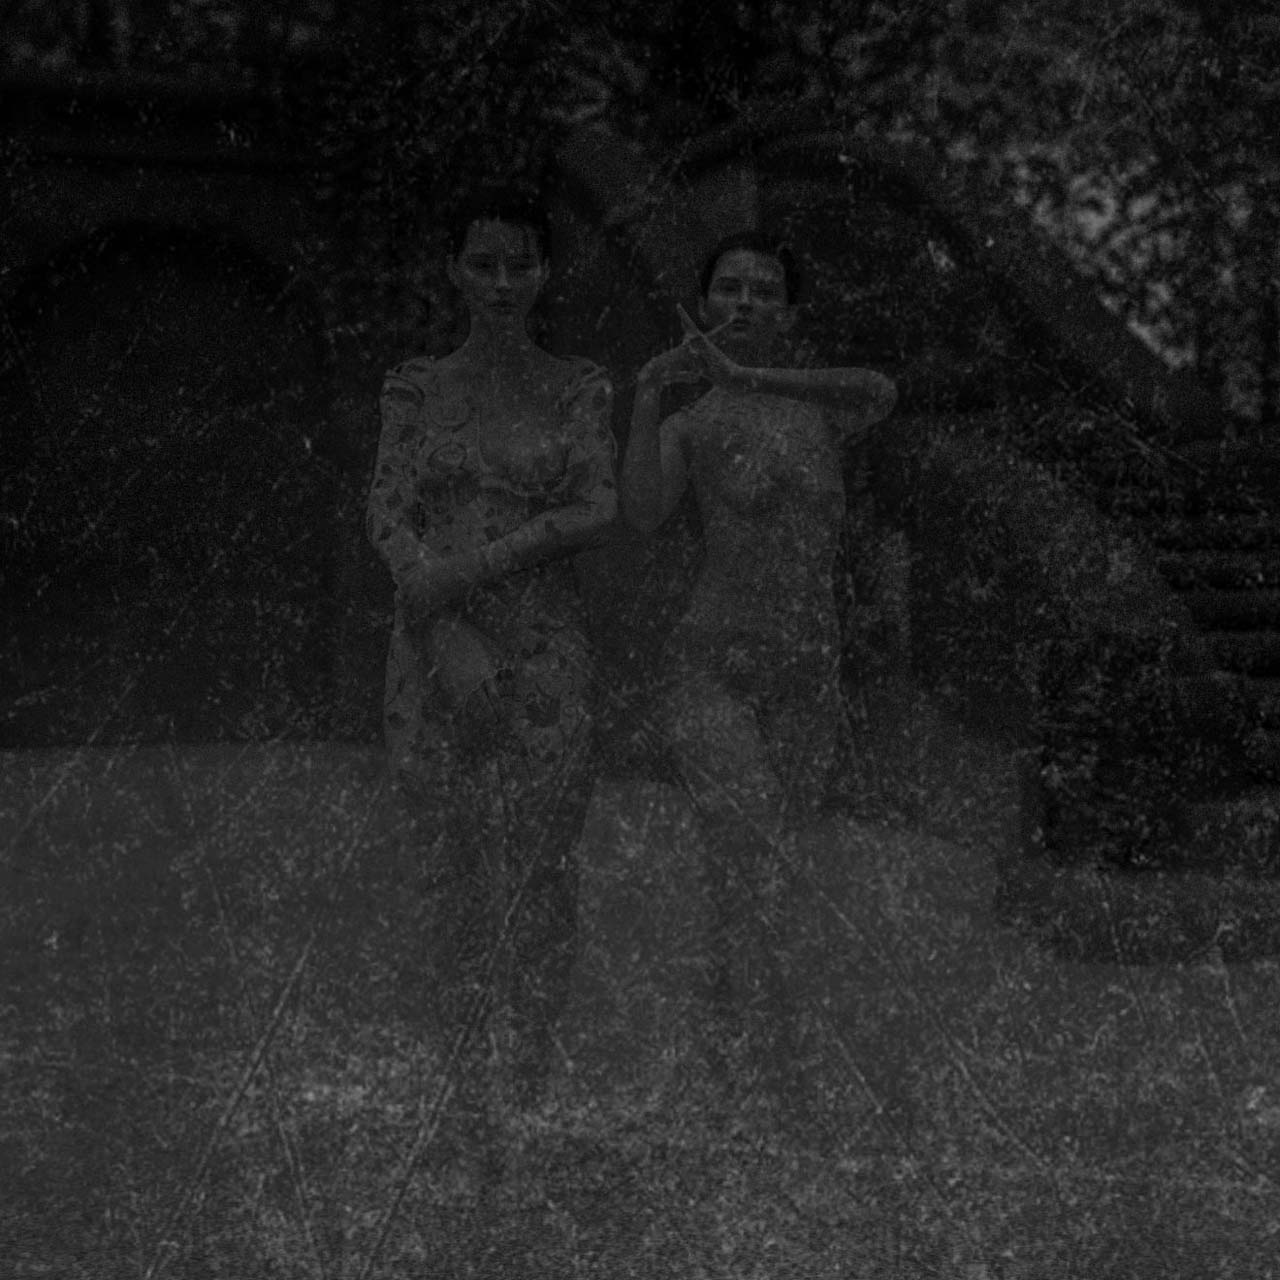 Der Eiskeller im Schlosspark Biesdorf, im Vordergrund zwei Frauen. Die Eismädchen? Undatierte Photographie. Courtesy Collection Claire Castelle.